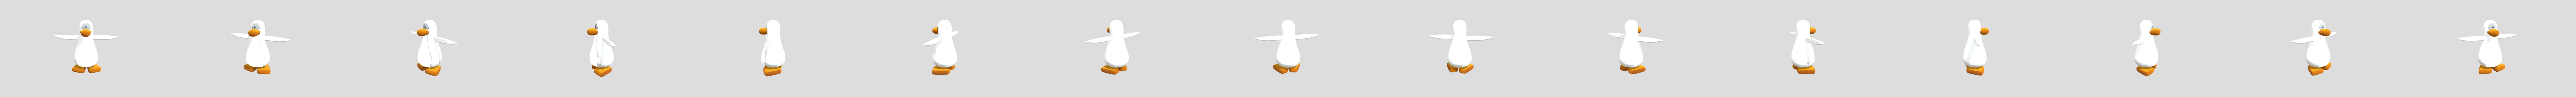 Penguin (Club Penguin) - Download Free 3D model by timeforrick  (@timeforrick) [646e334]